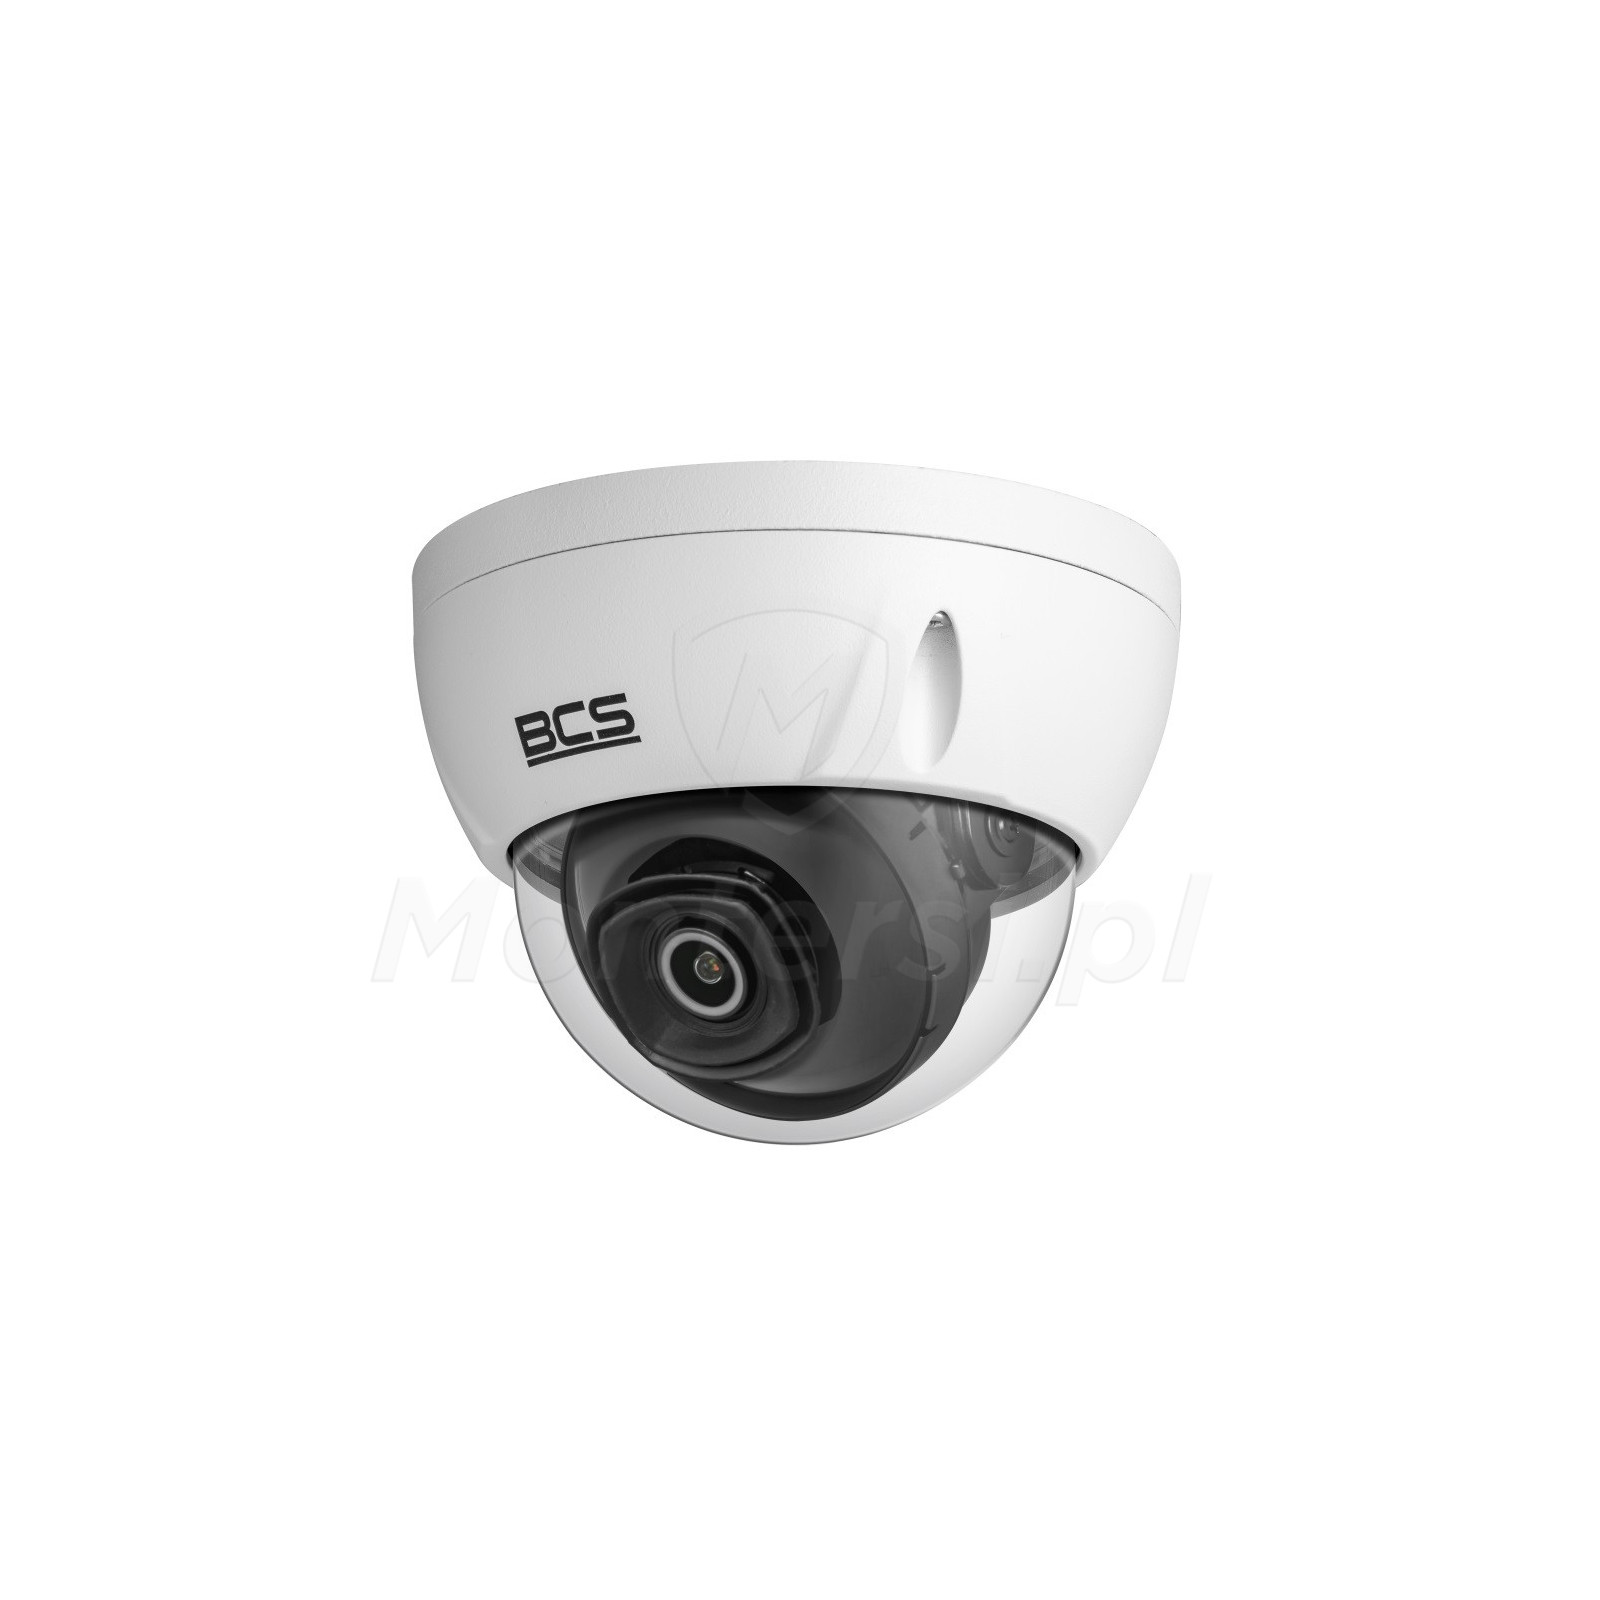 Wandaloodporna kamera IP BCS-L-DIP14FSR3-Ai1